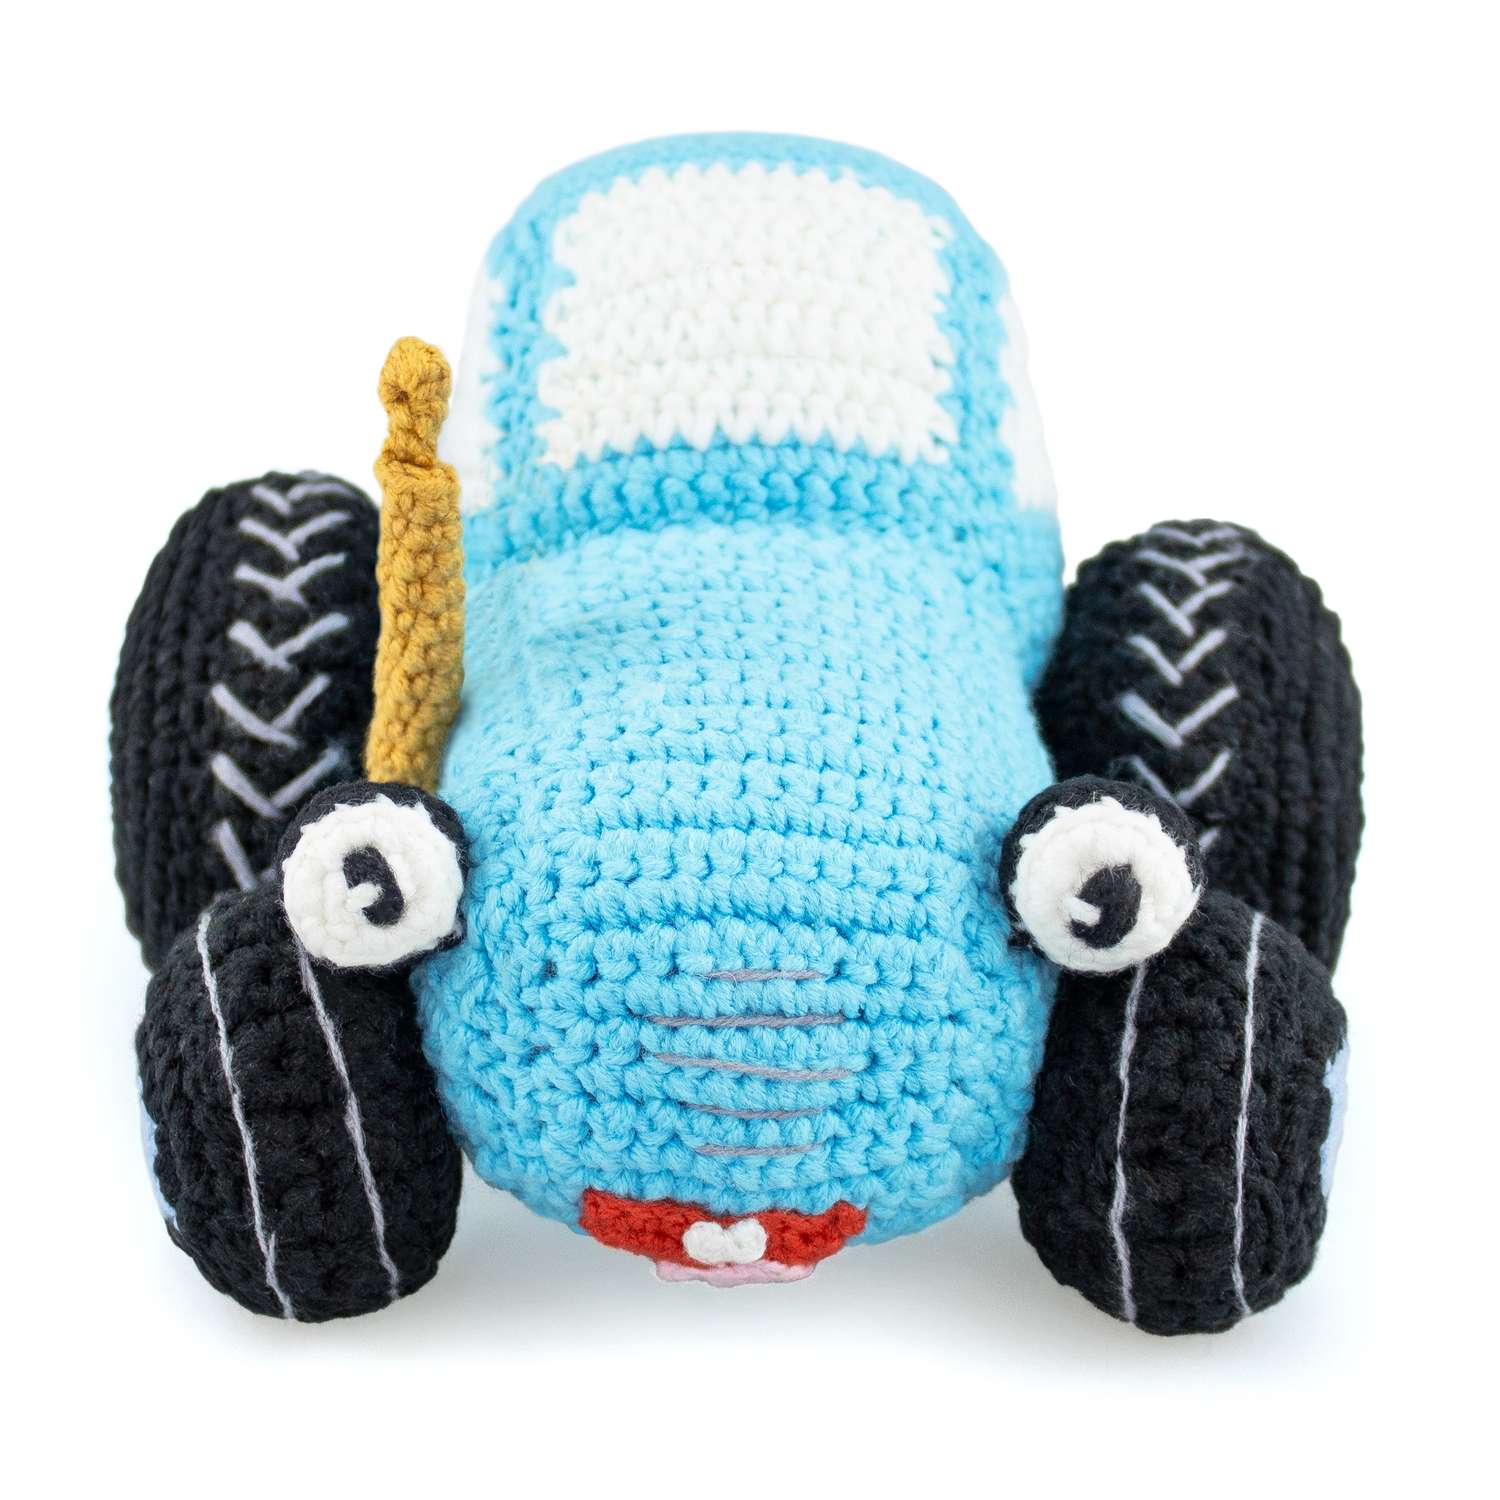 Мягкая игрушка Синий трактор вязаная игрушка Синий Трактор - фото 3